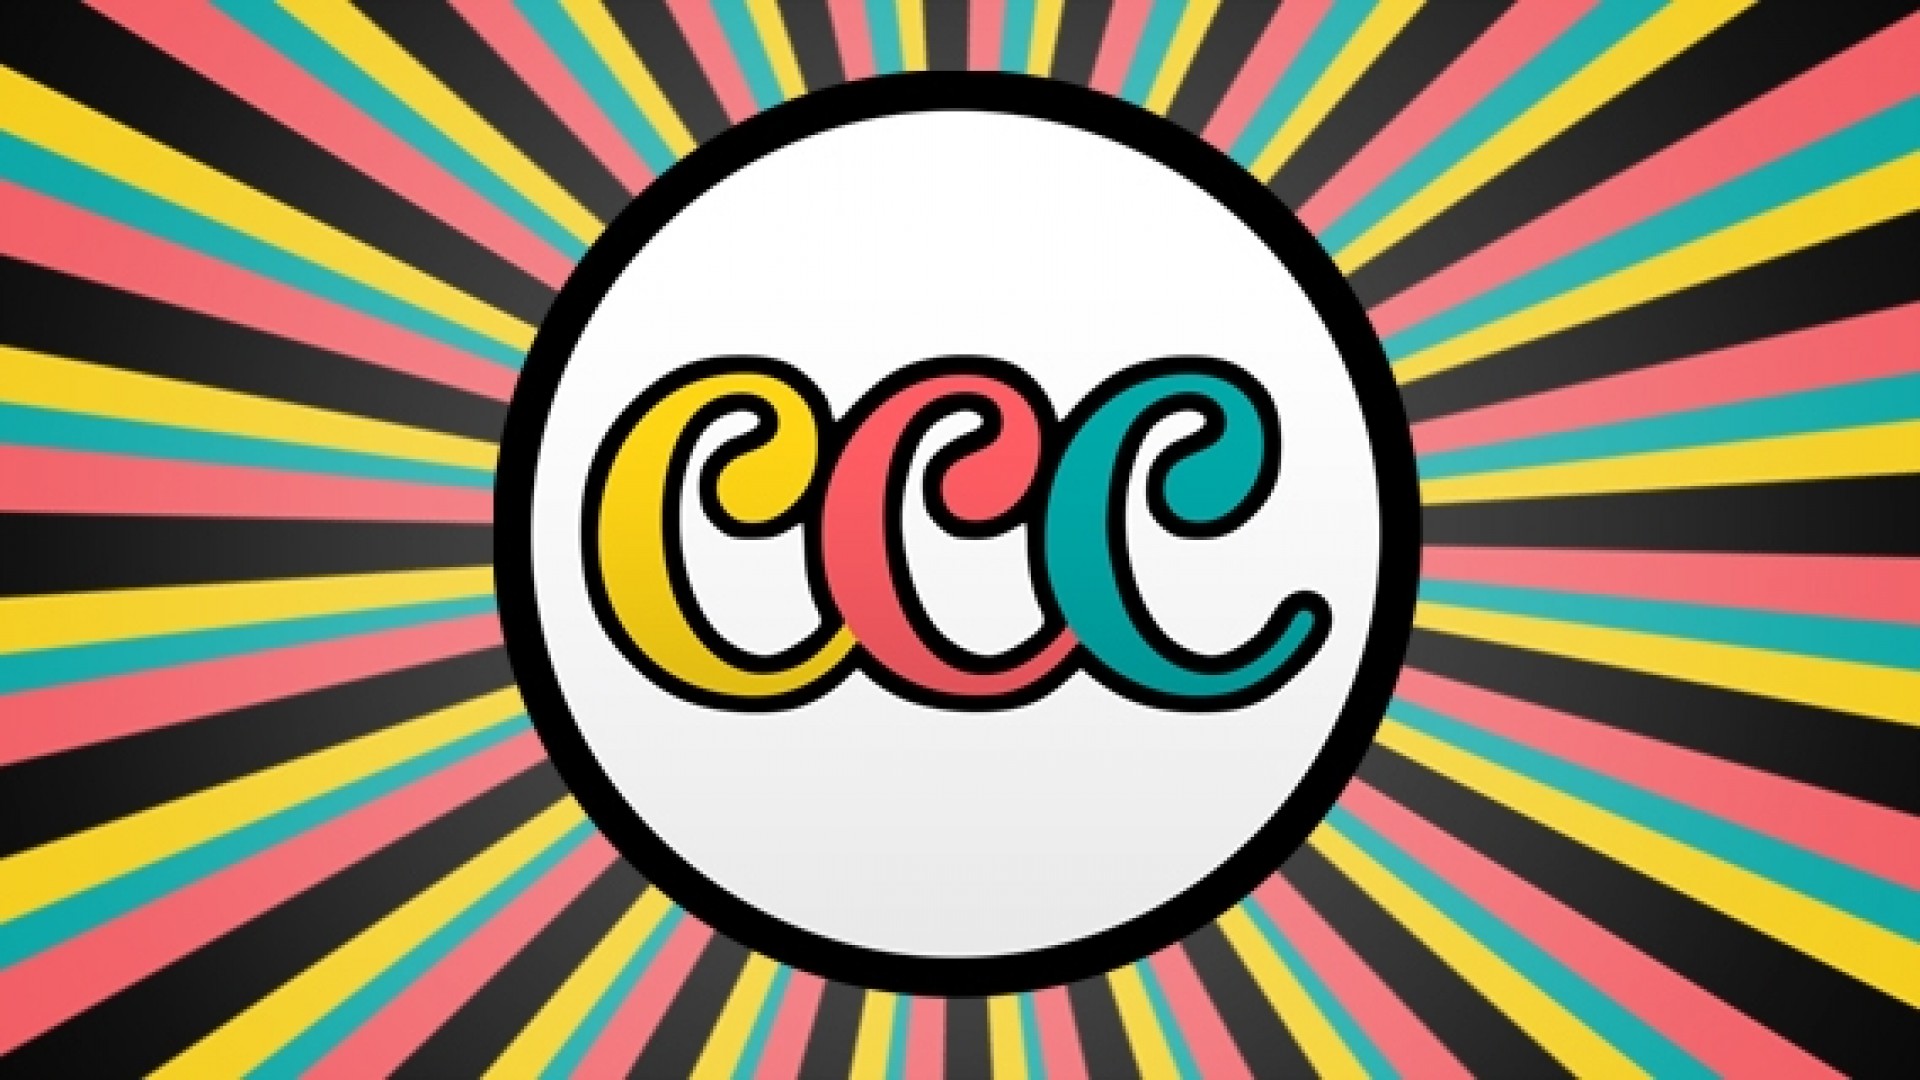 Copie Copains Club (copycat friends club)- Launch party